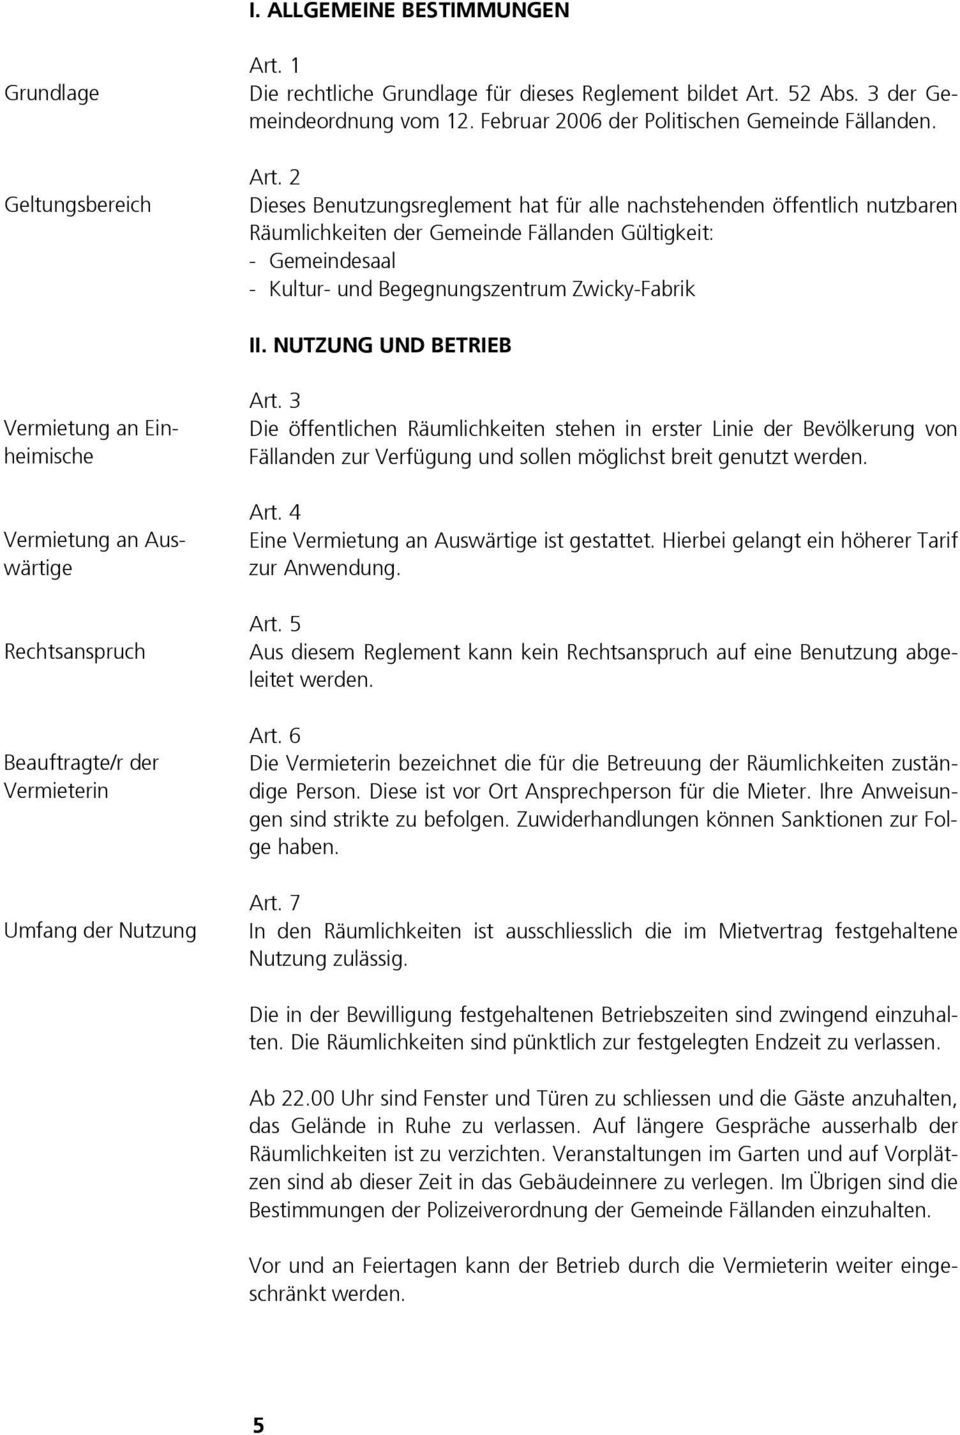 2 Dieses Benutzungsreglement hat für alle nachstehenden öffentlich nutzbaren Räumlichkeiten der Gemeinde Fällanden Gültigkeit: - Gemeindesaal - Kultur- und Begegnungszentrum Zwicky-Fabrik II.